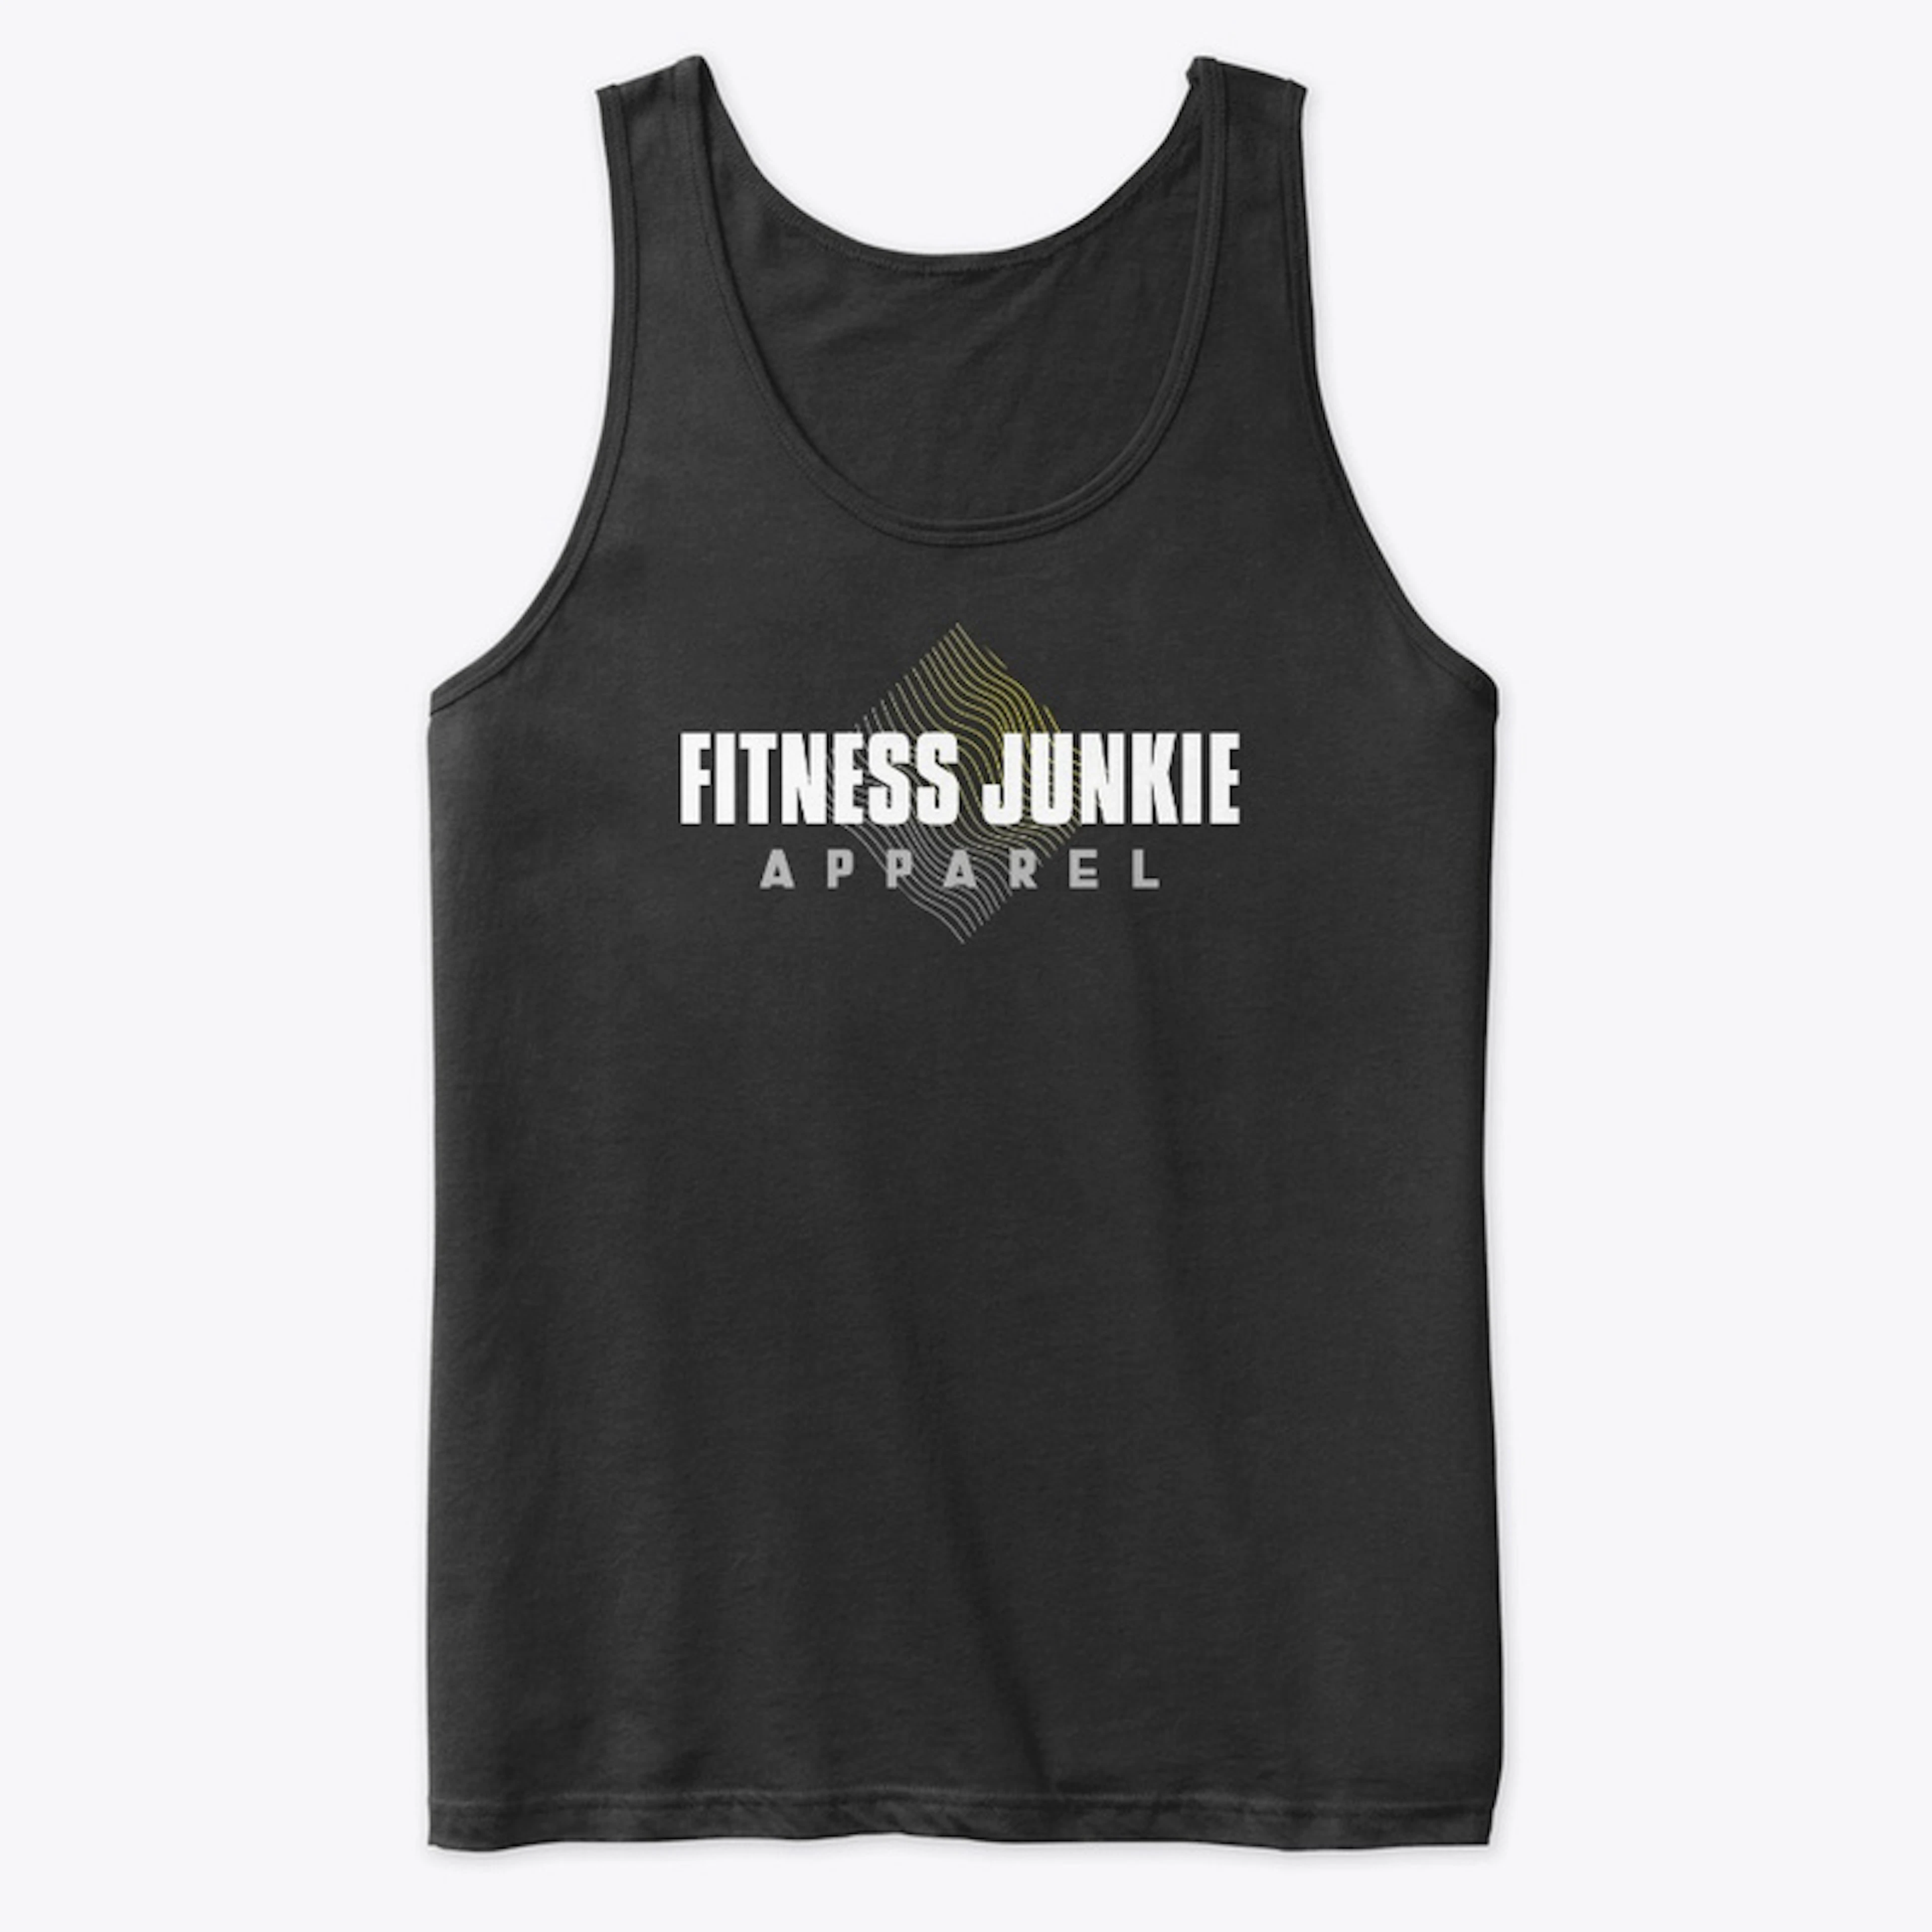 Fitness Junkie original